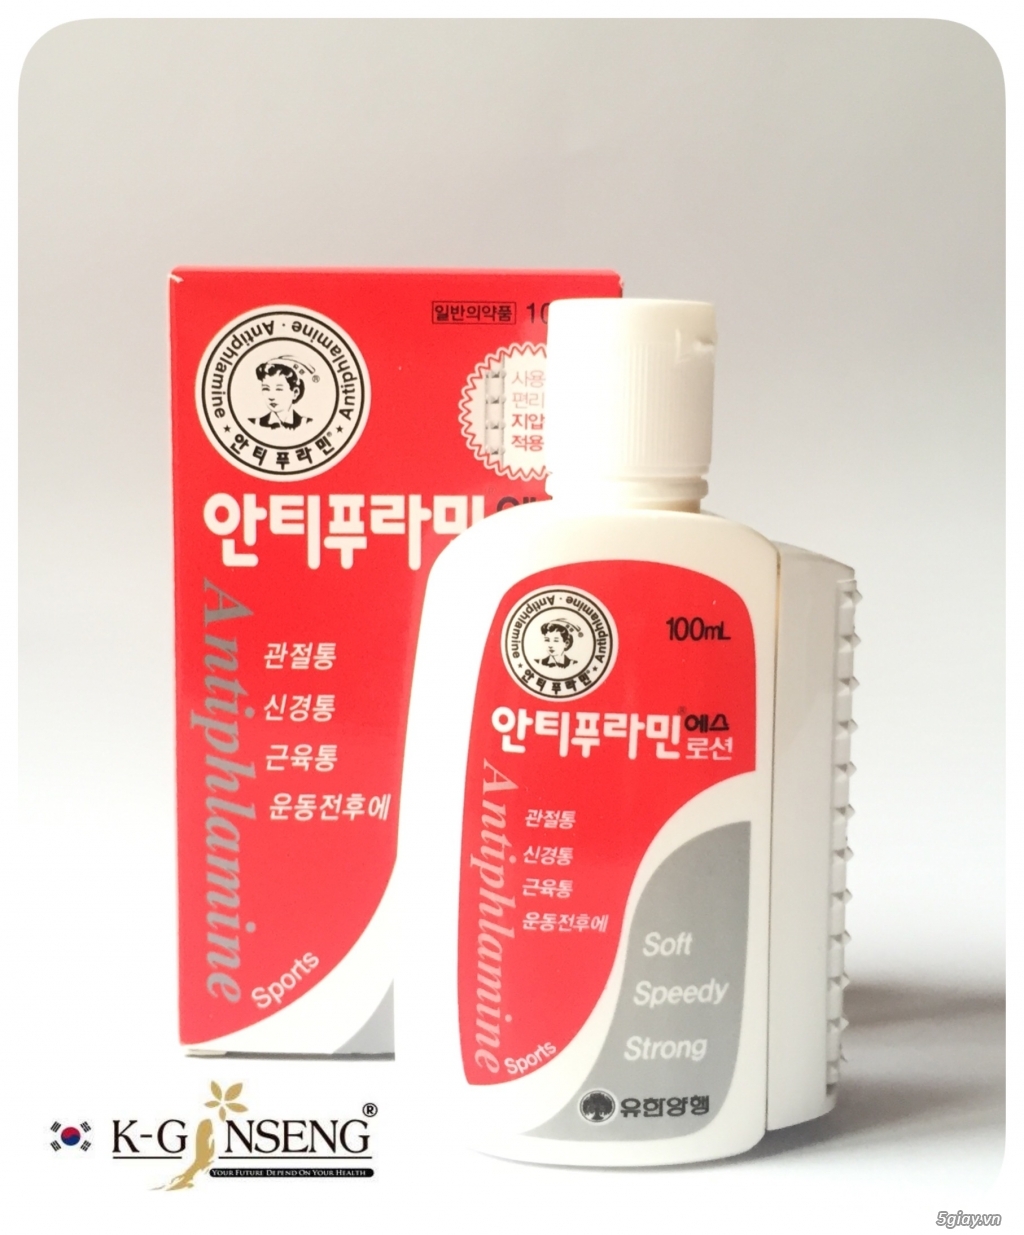 Dầu Nóng Antiphlamine 100% Hàn Quốc - Giảm Đau Nhanh Chóng Cơn Đau Nhức Của Bạn - 2